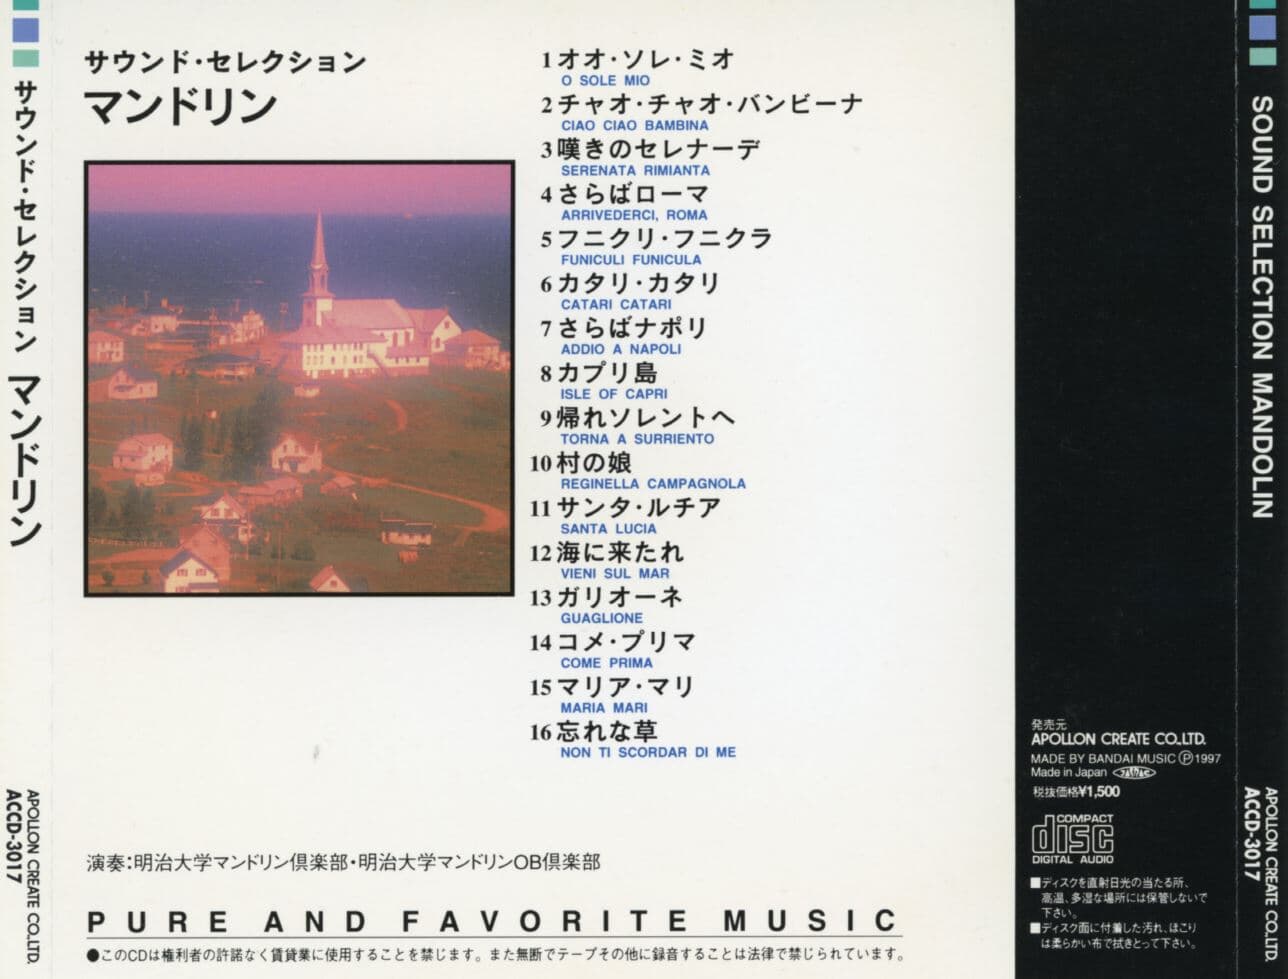 사운드 셀렉션 만도린 - Sound Selection Mandolin [일본발매]